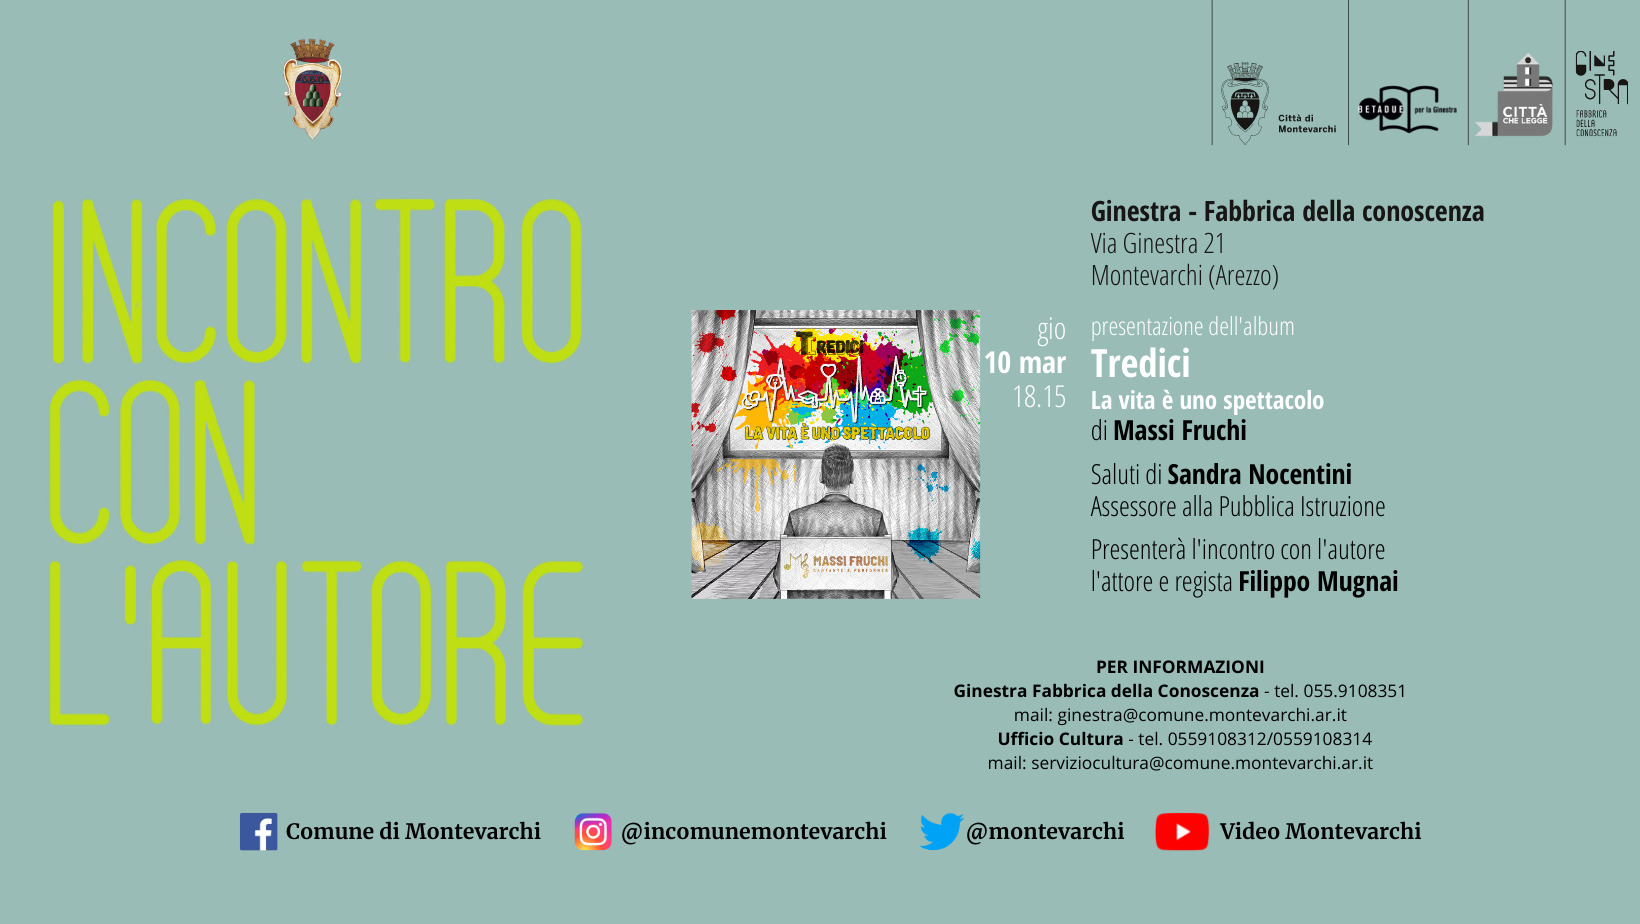 “Incontro con l’autore”: presentazione album musicale di Massimiliano Fruchi